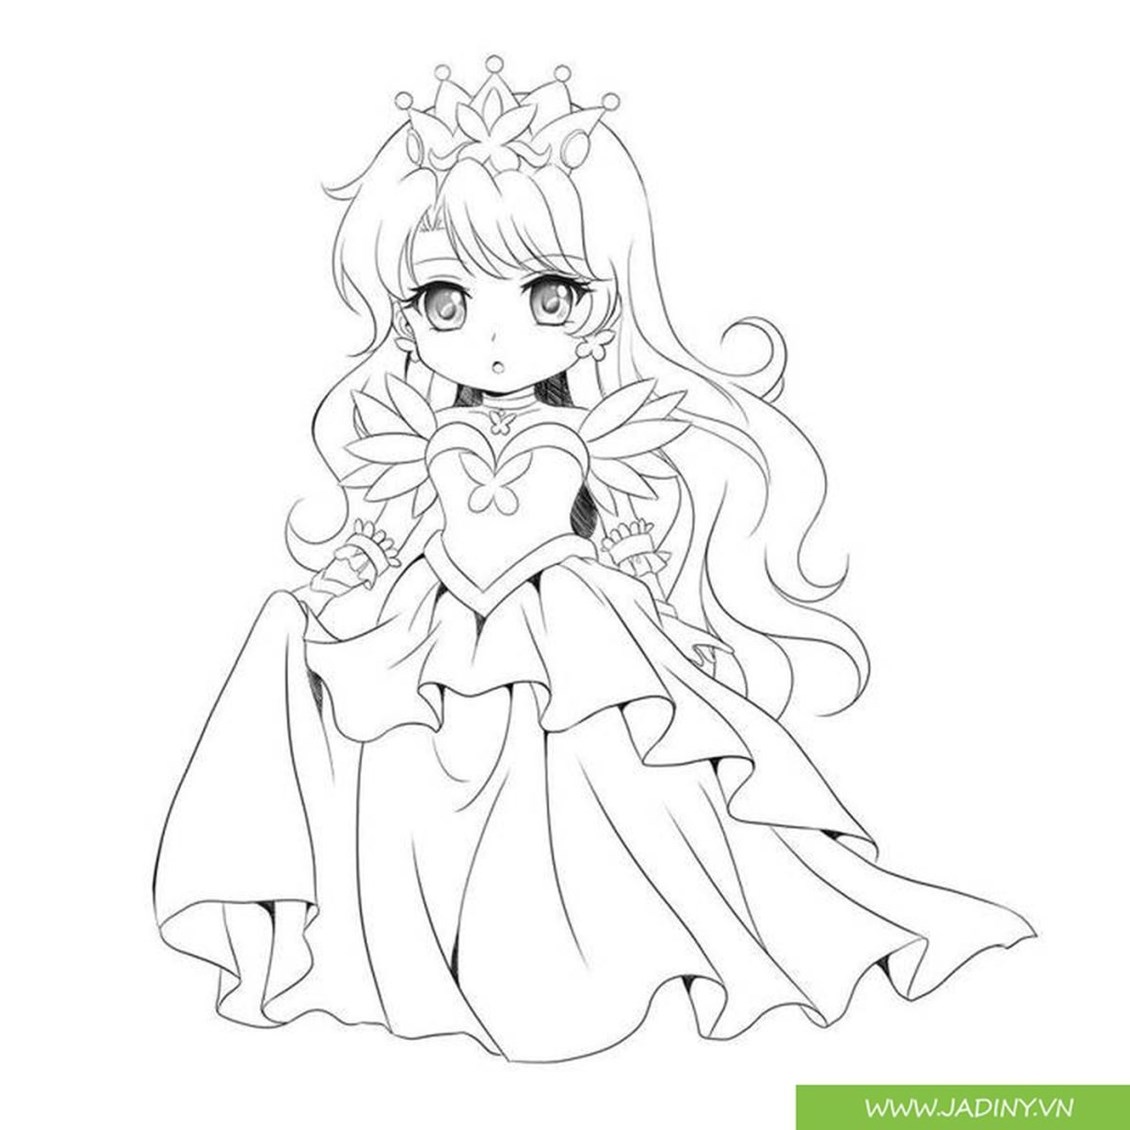 Tranh tô màu công chúa chibi đẹp | Chibi, Dễ thương, Anime